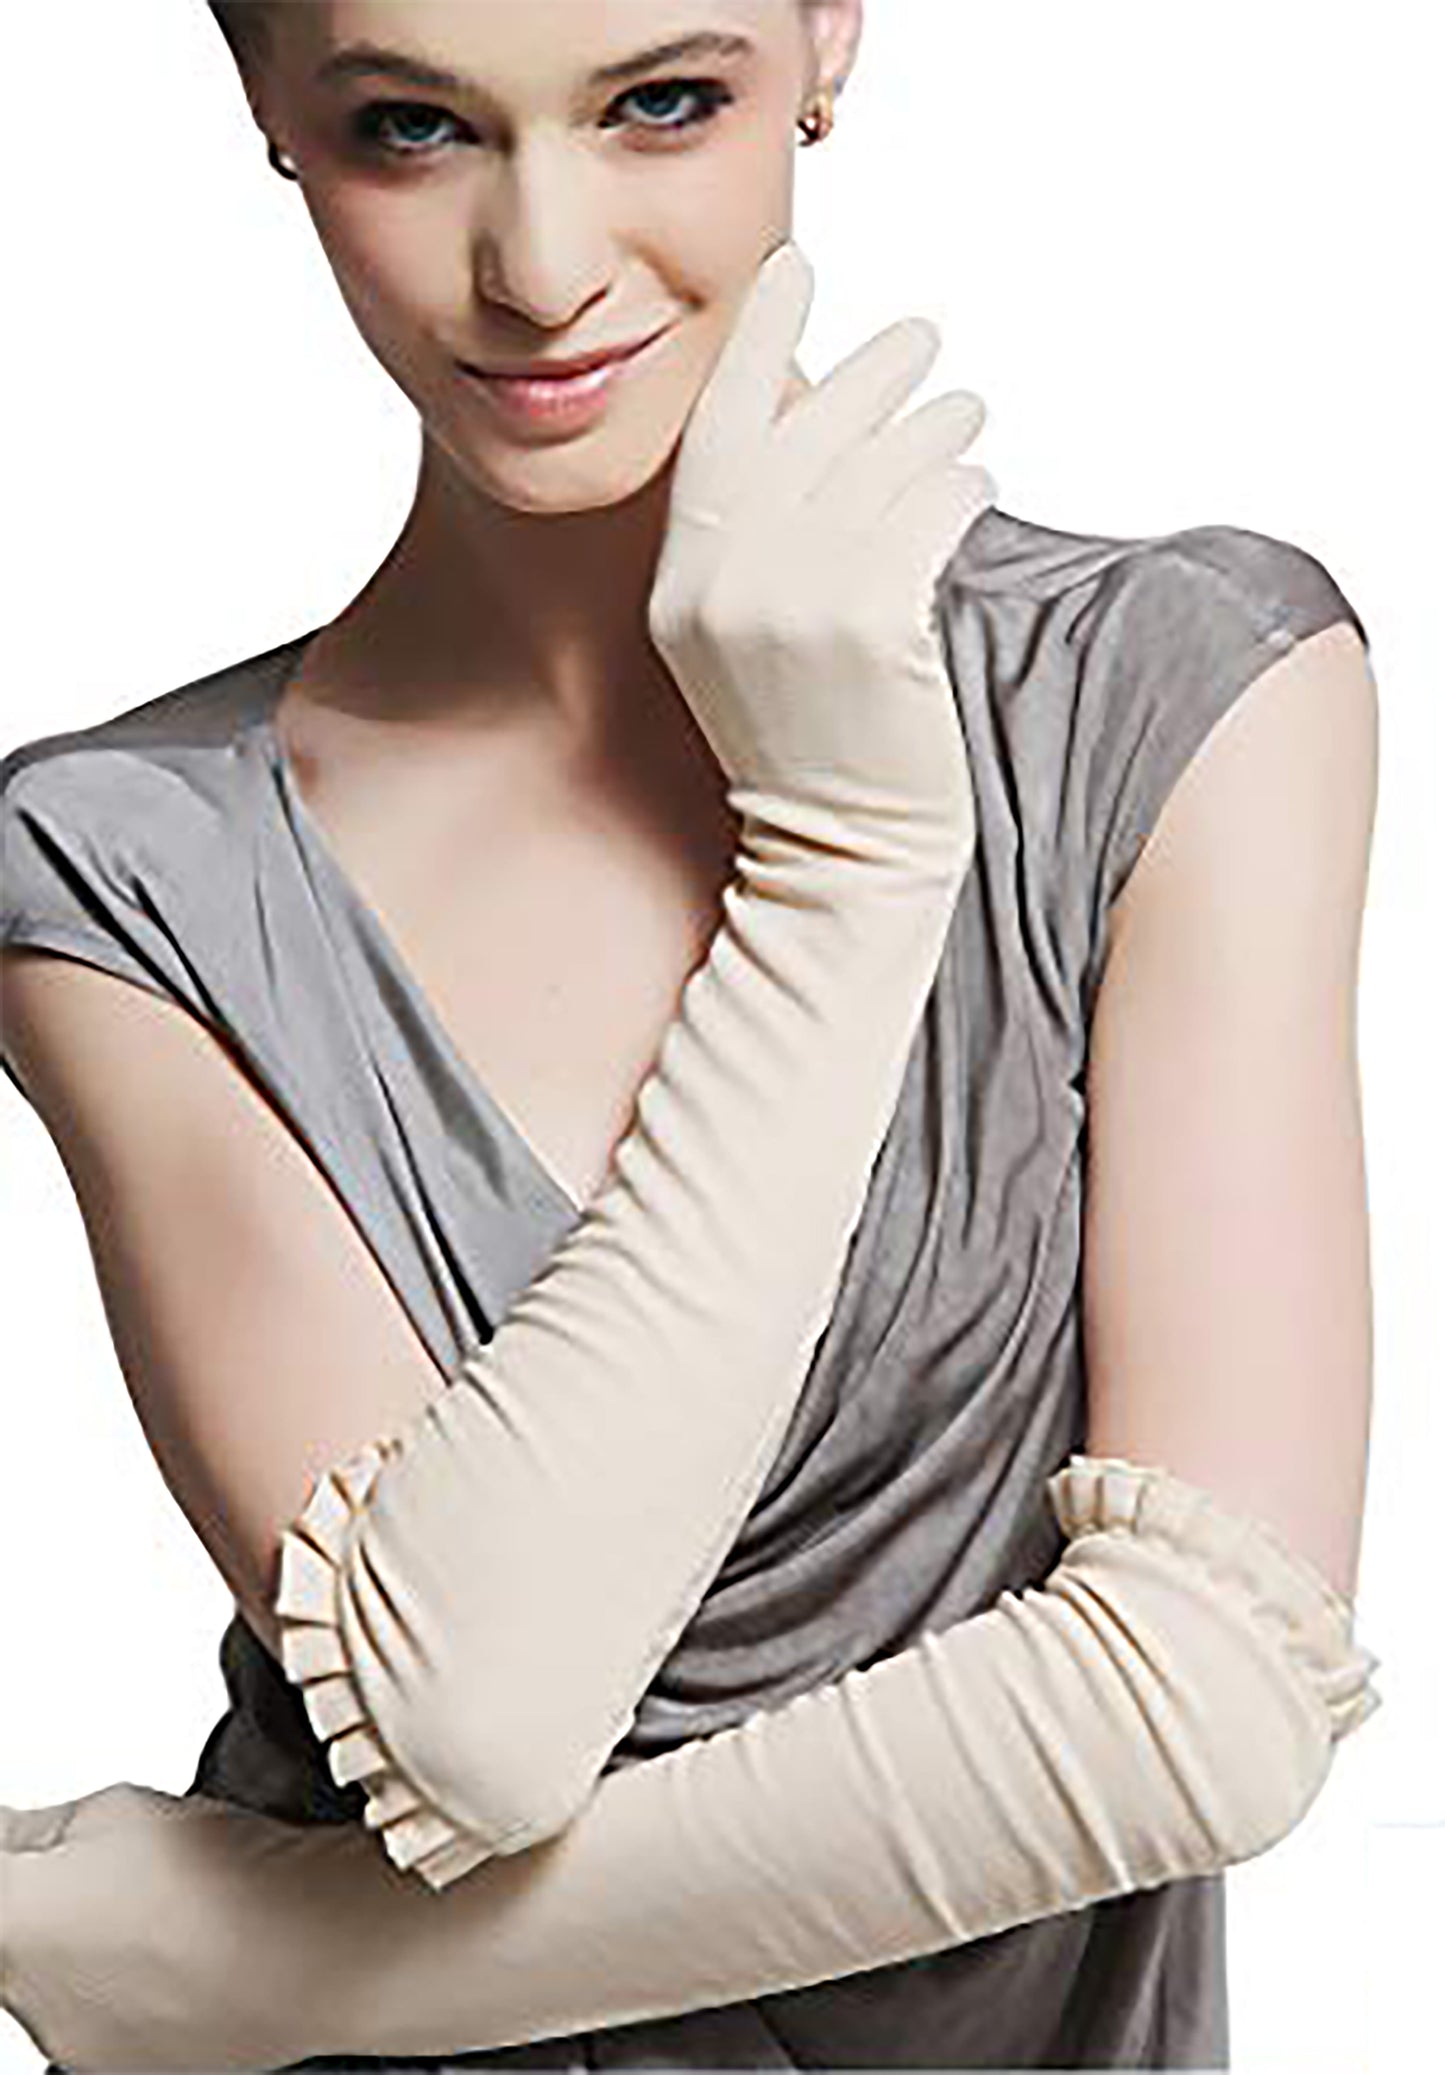 Women's 18.0" Elbow Length Long Gloves (Only 1 left)